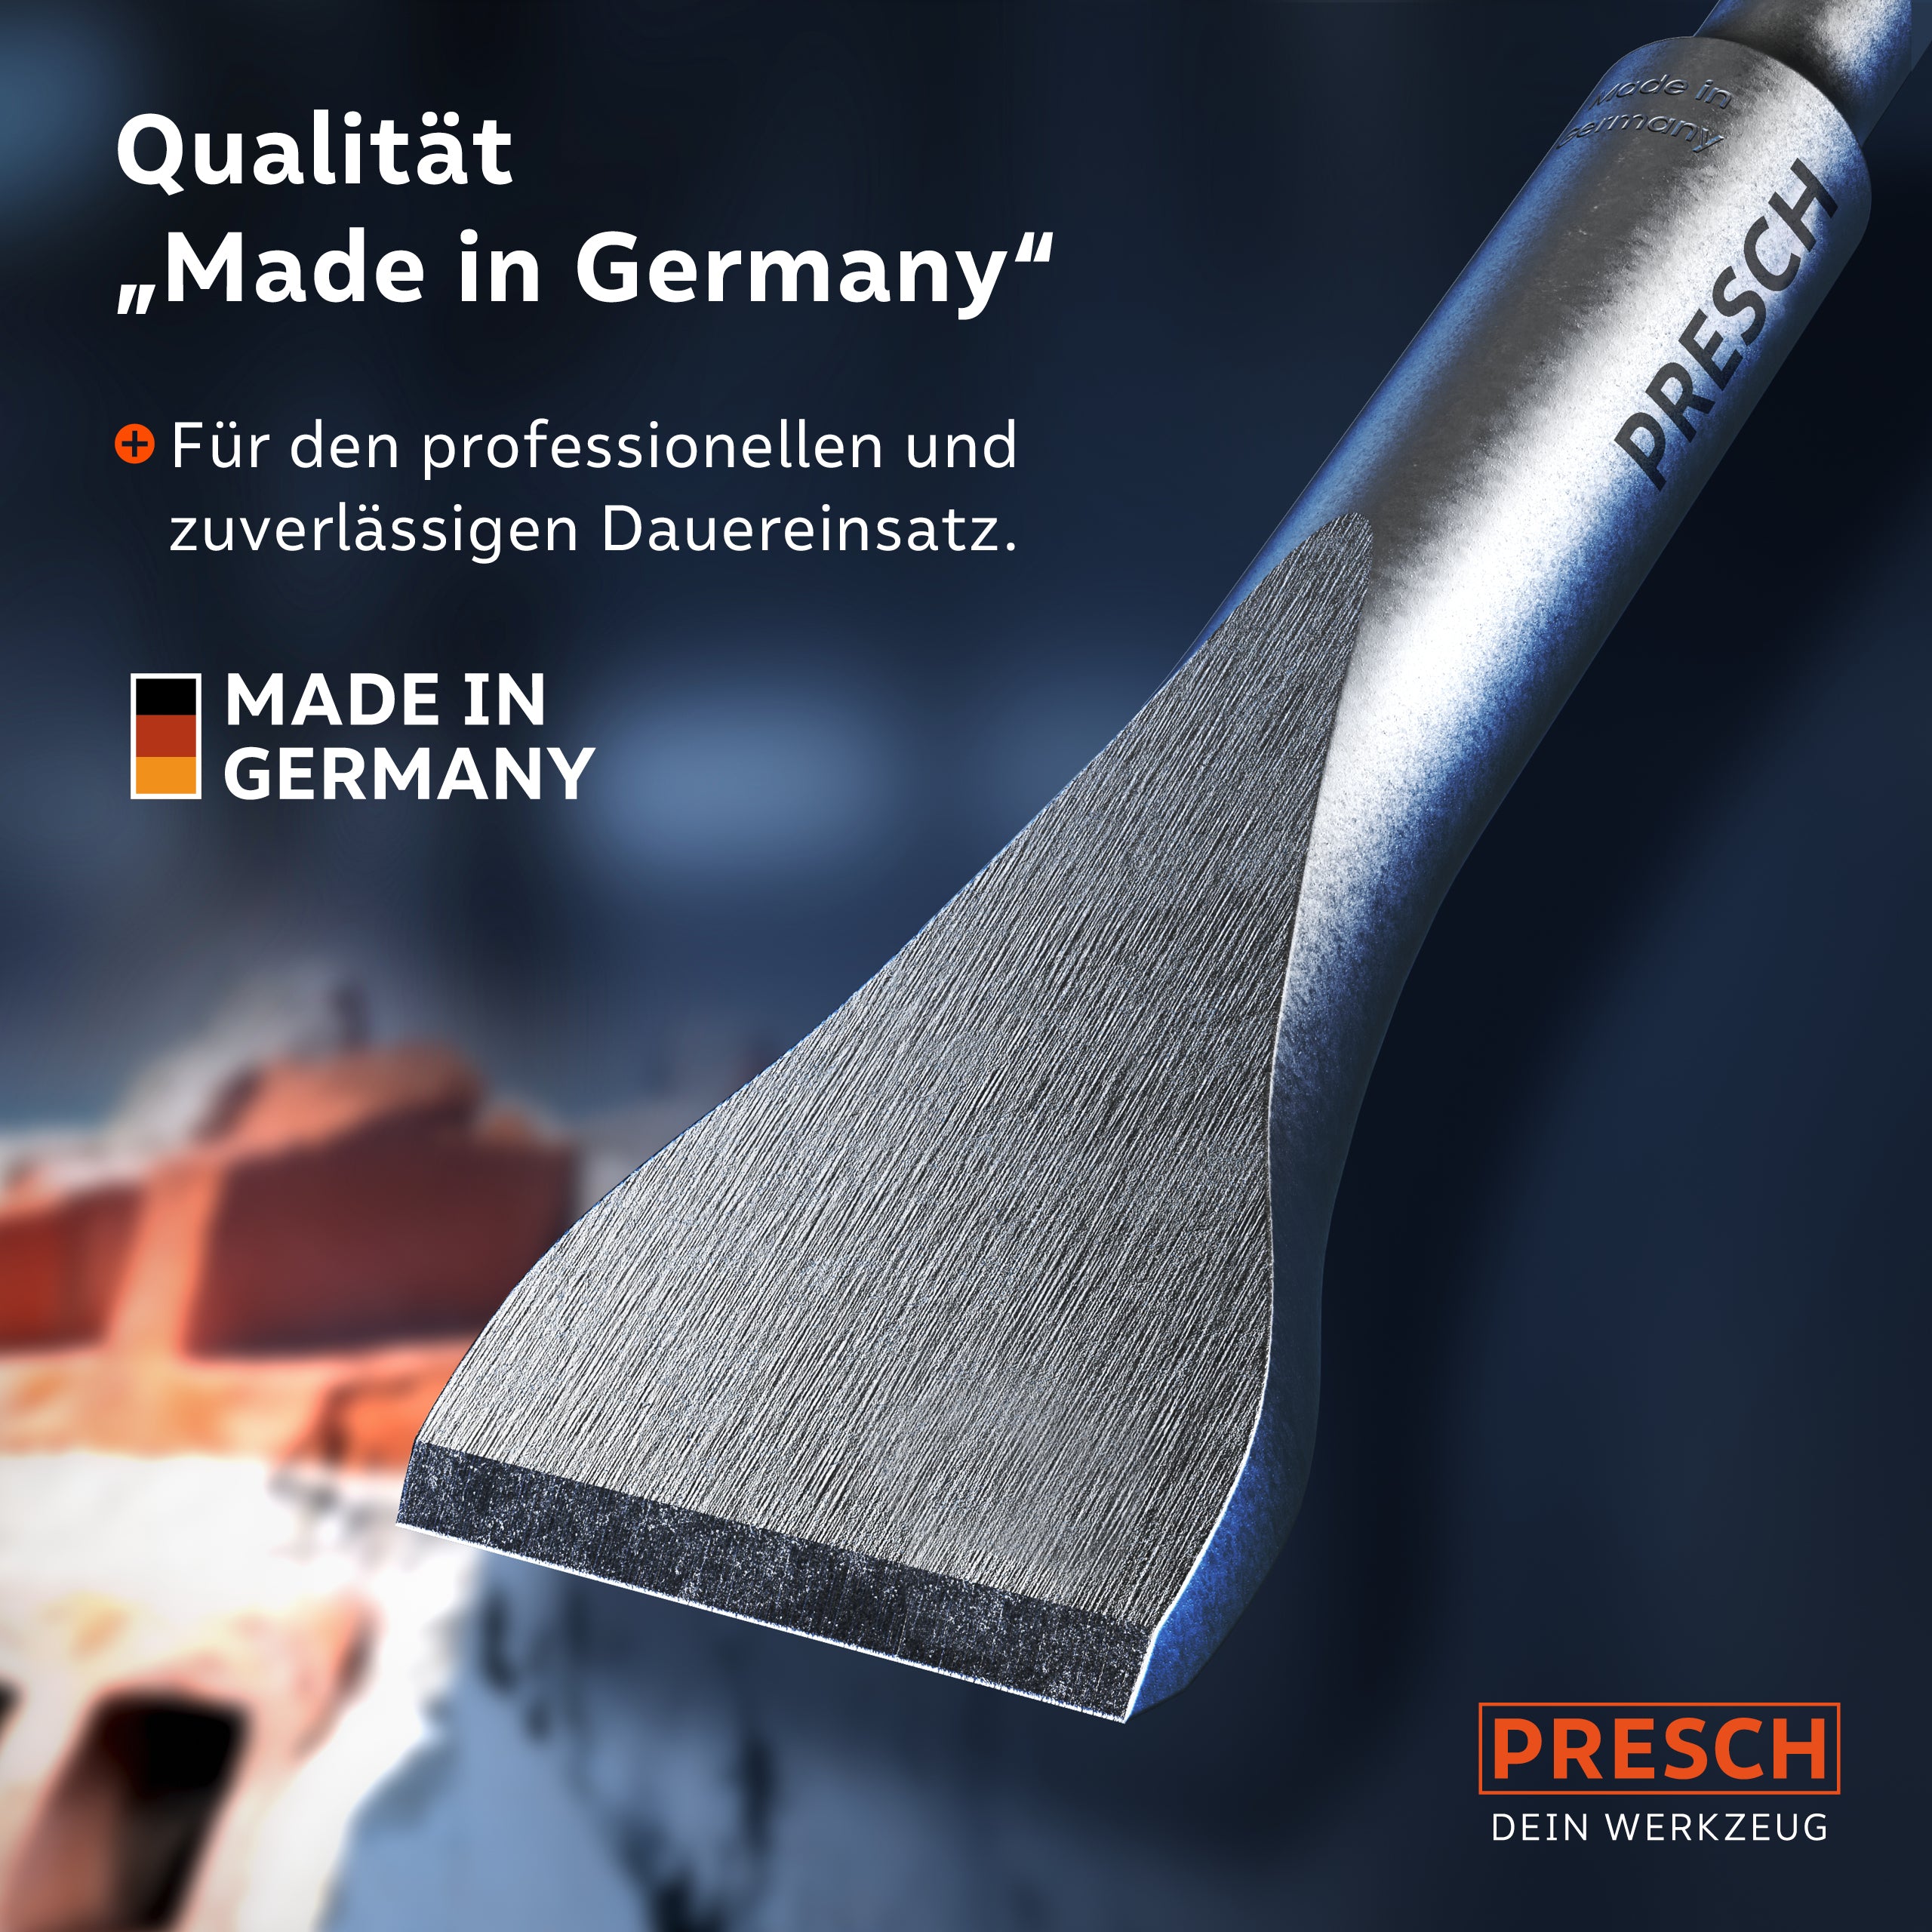 Presch Handwerkzeug Made in Germany für professionelle Anwendung und präzises Arbeiten